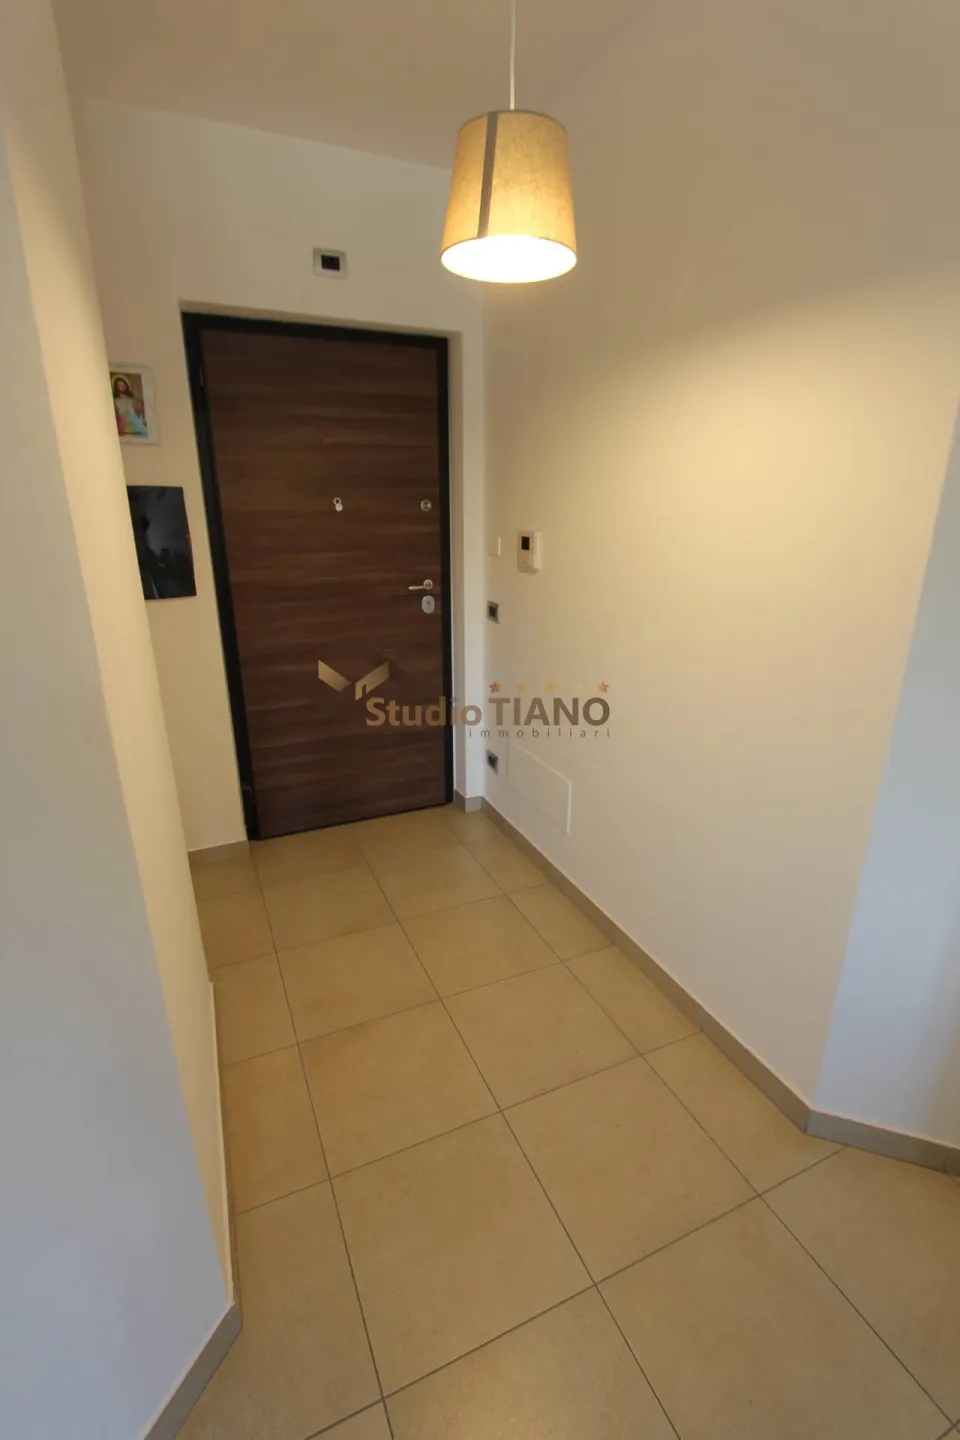 Immagine per Appartamento in vendita a Rende VIA SANDRO BOTTICELLI